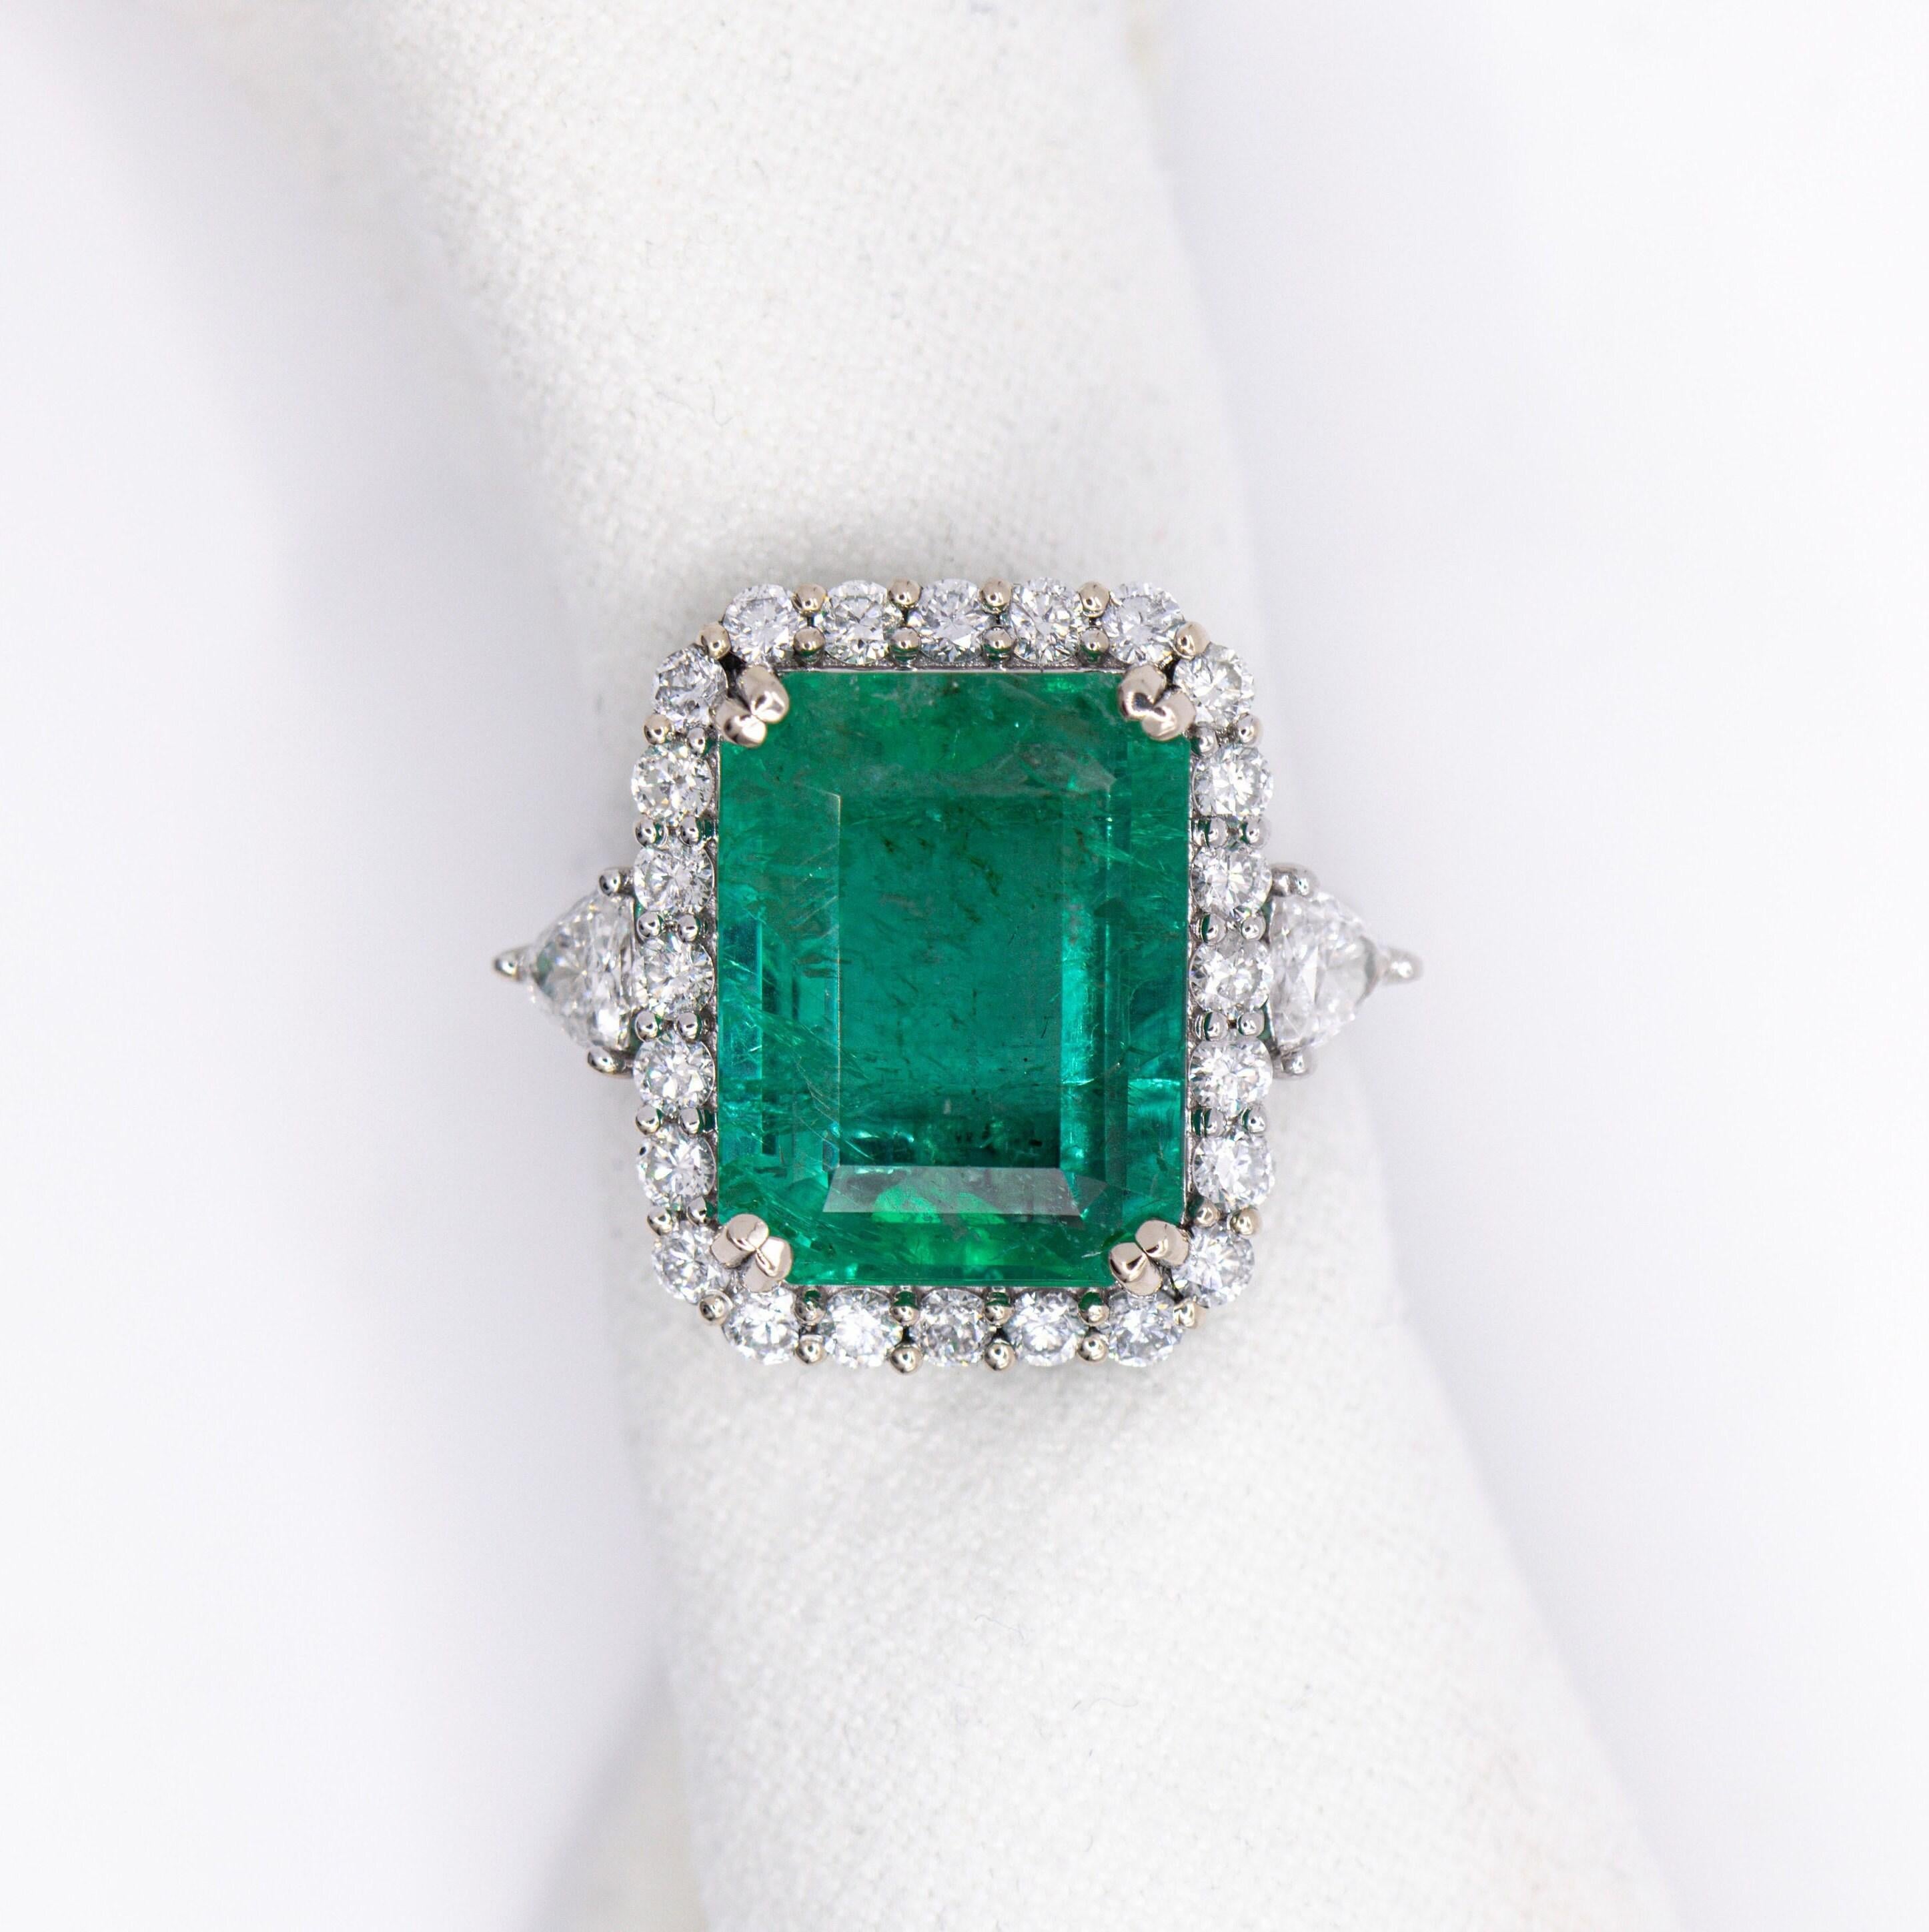 Eleganter und klassischer Goldring mit einem schillernden Smaragd in der Mitte, der durch einen Halo aus einem natürlichen, in der Erde geförderten Diamanten akzentuiert wird. Perfekt für alle Anlässe wie Hochzeiten, Jahrestage, Versprechensringe,